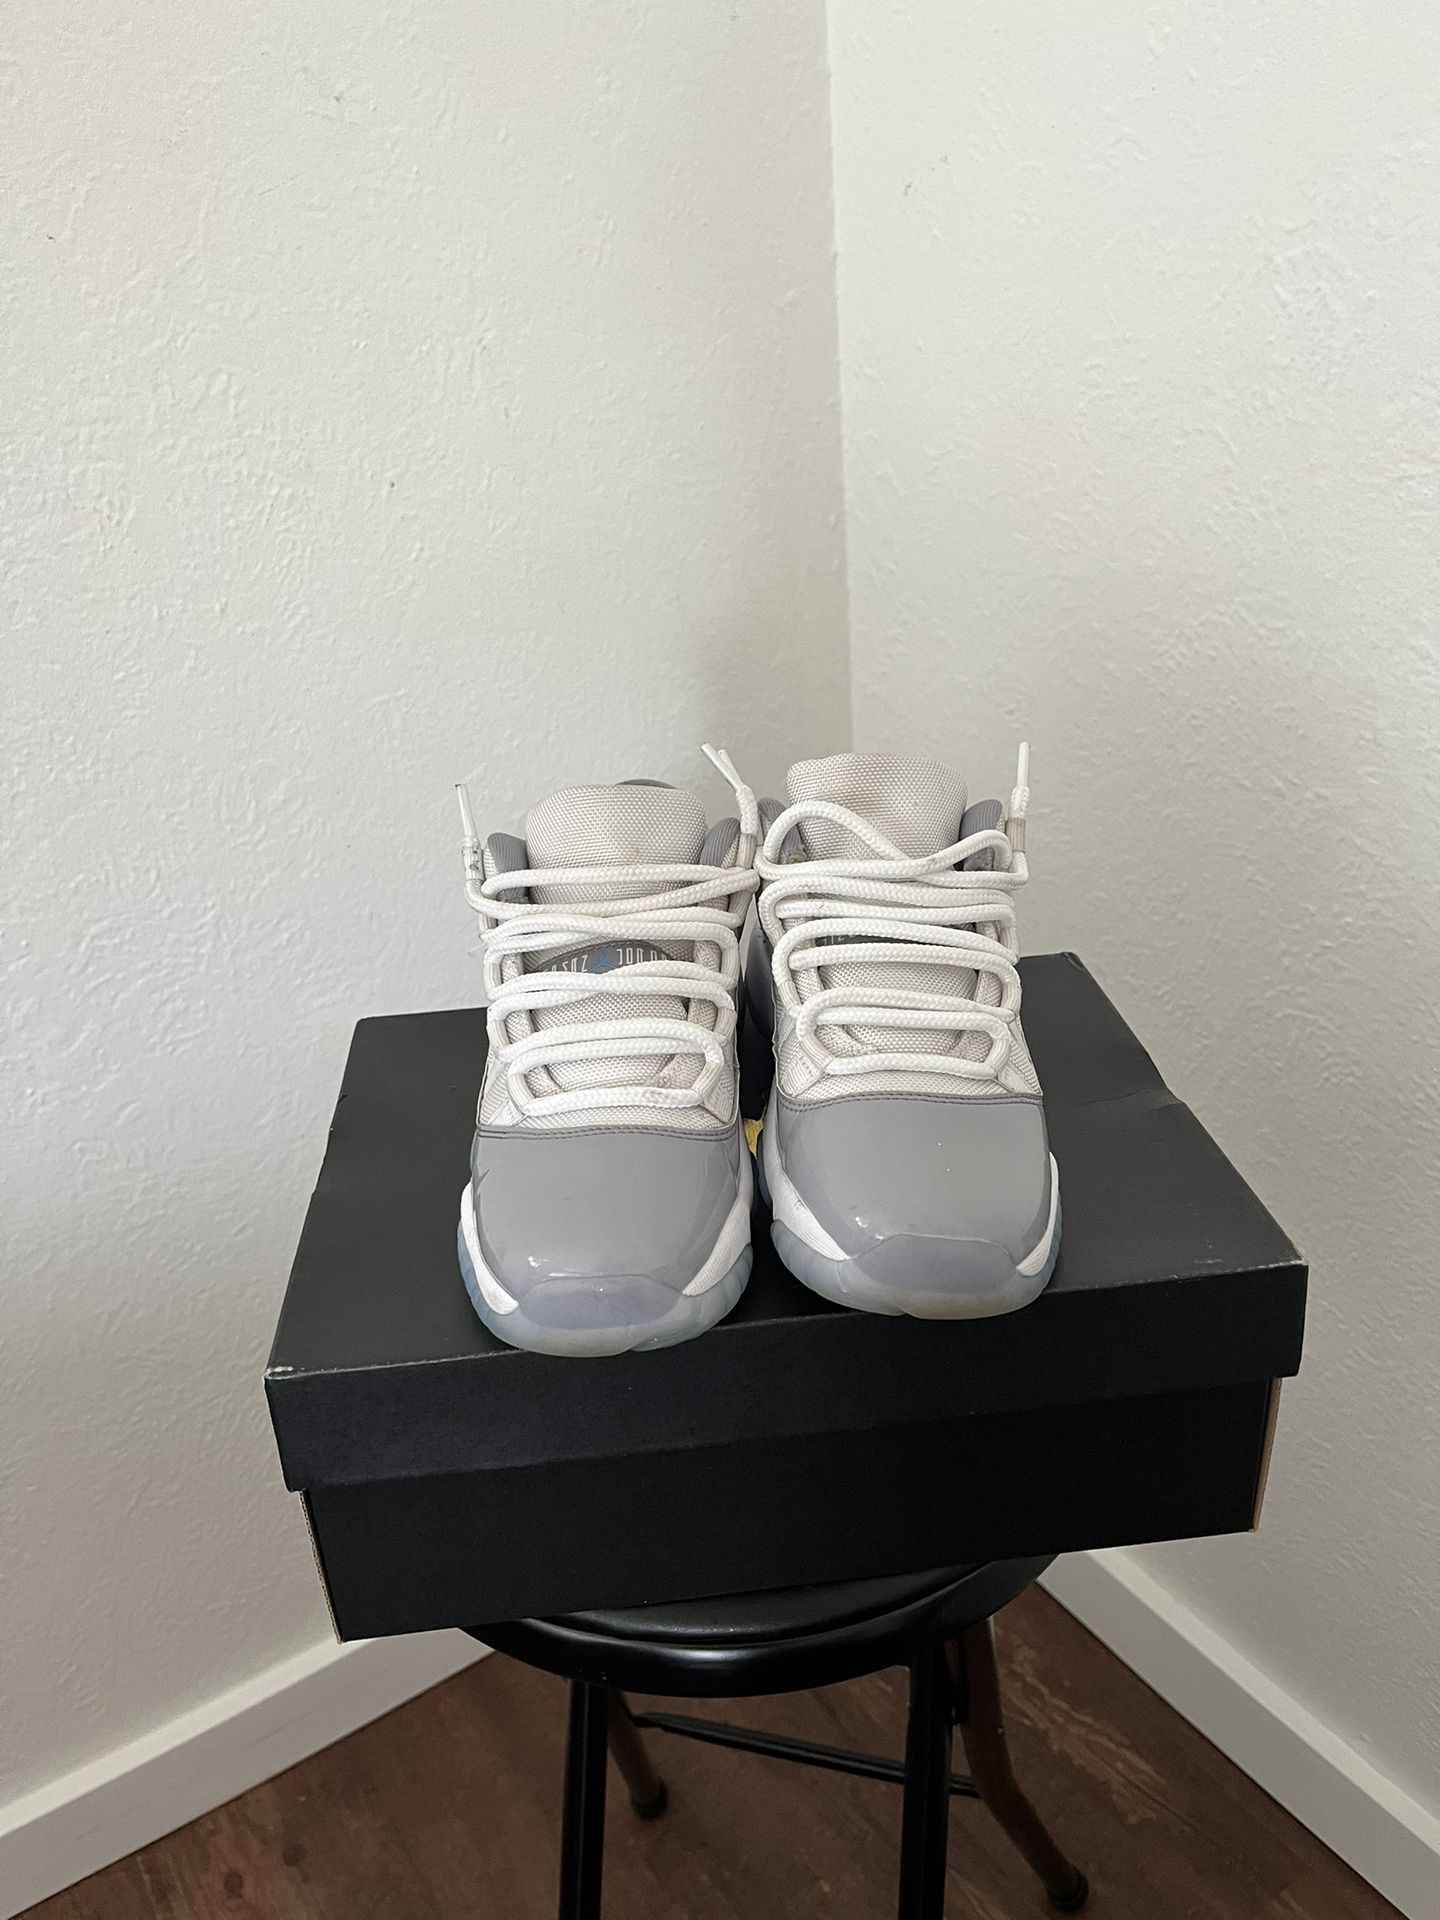 Jordan 11 Cement Grey Size 6Y